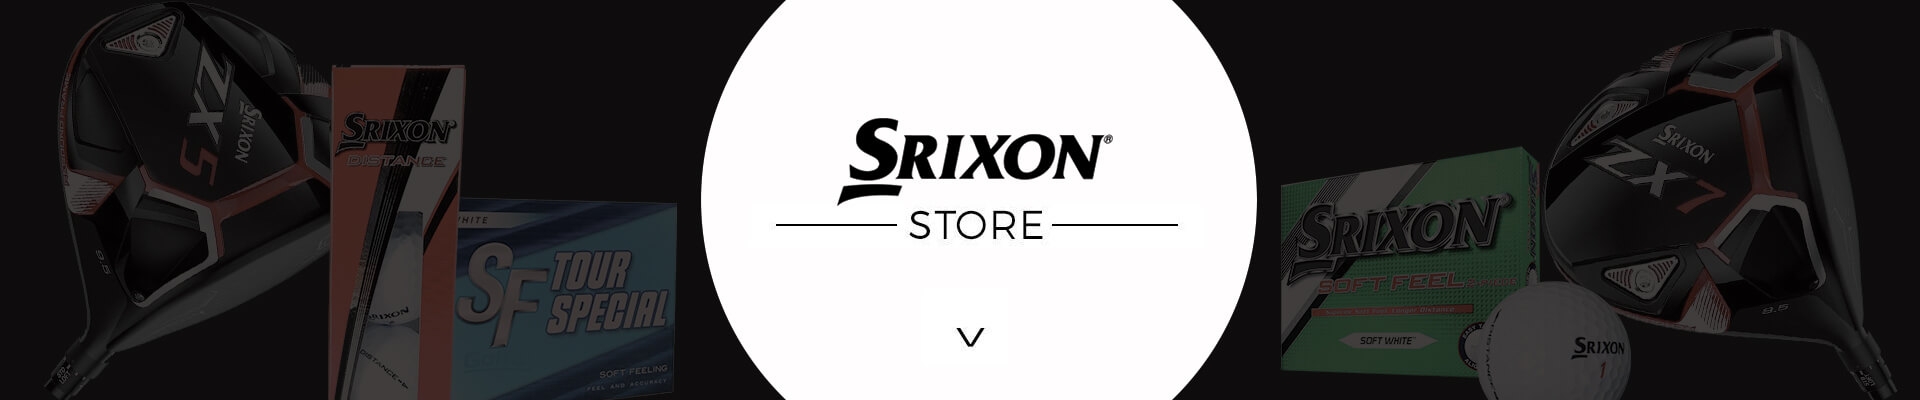 Srixon Store